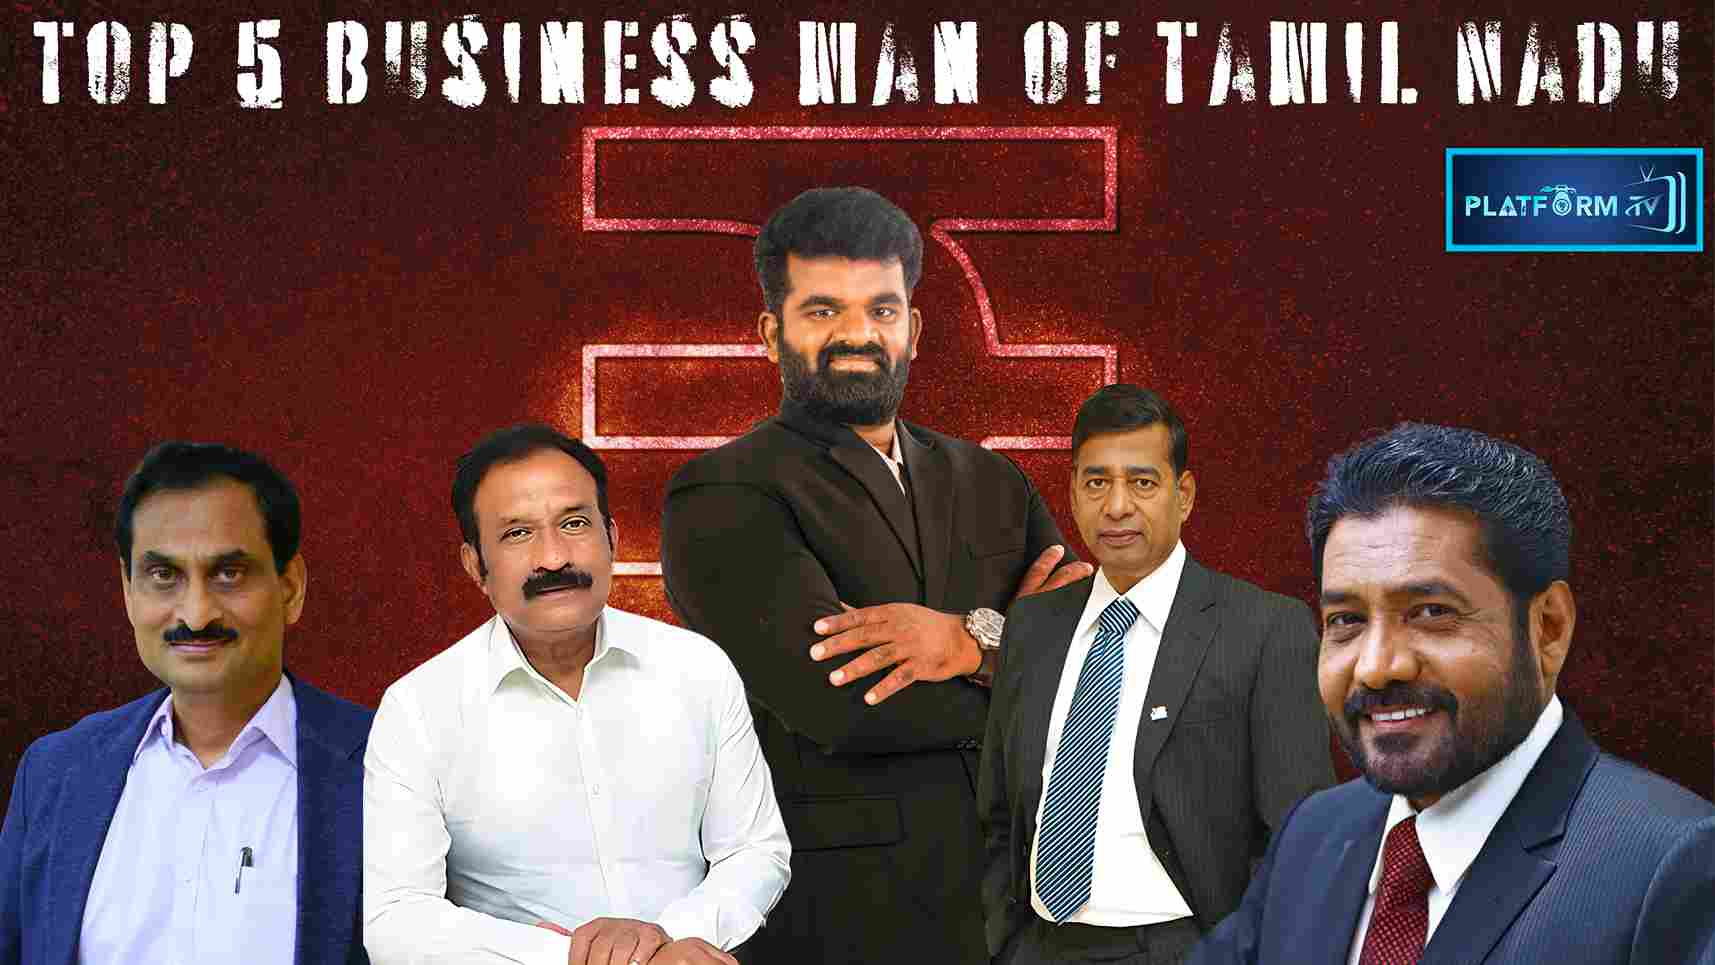 Top 5 Business Man Of Tamil Nadu - Platform Tamil